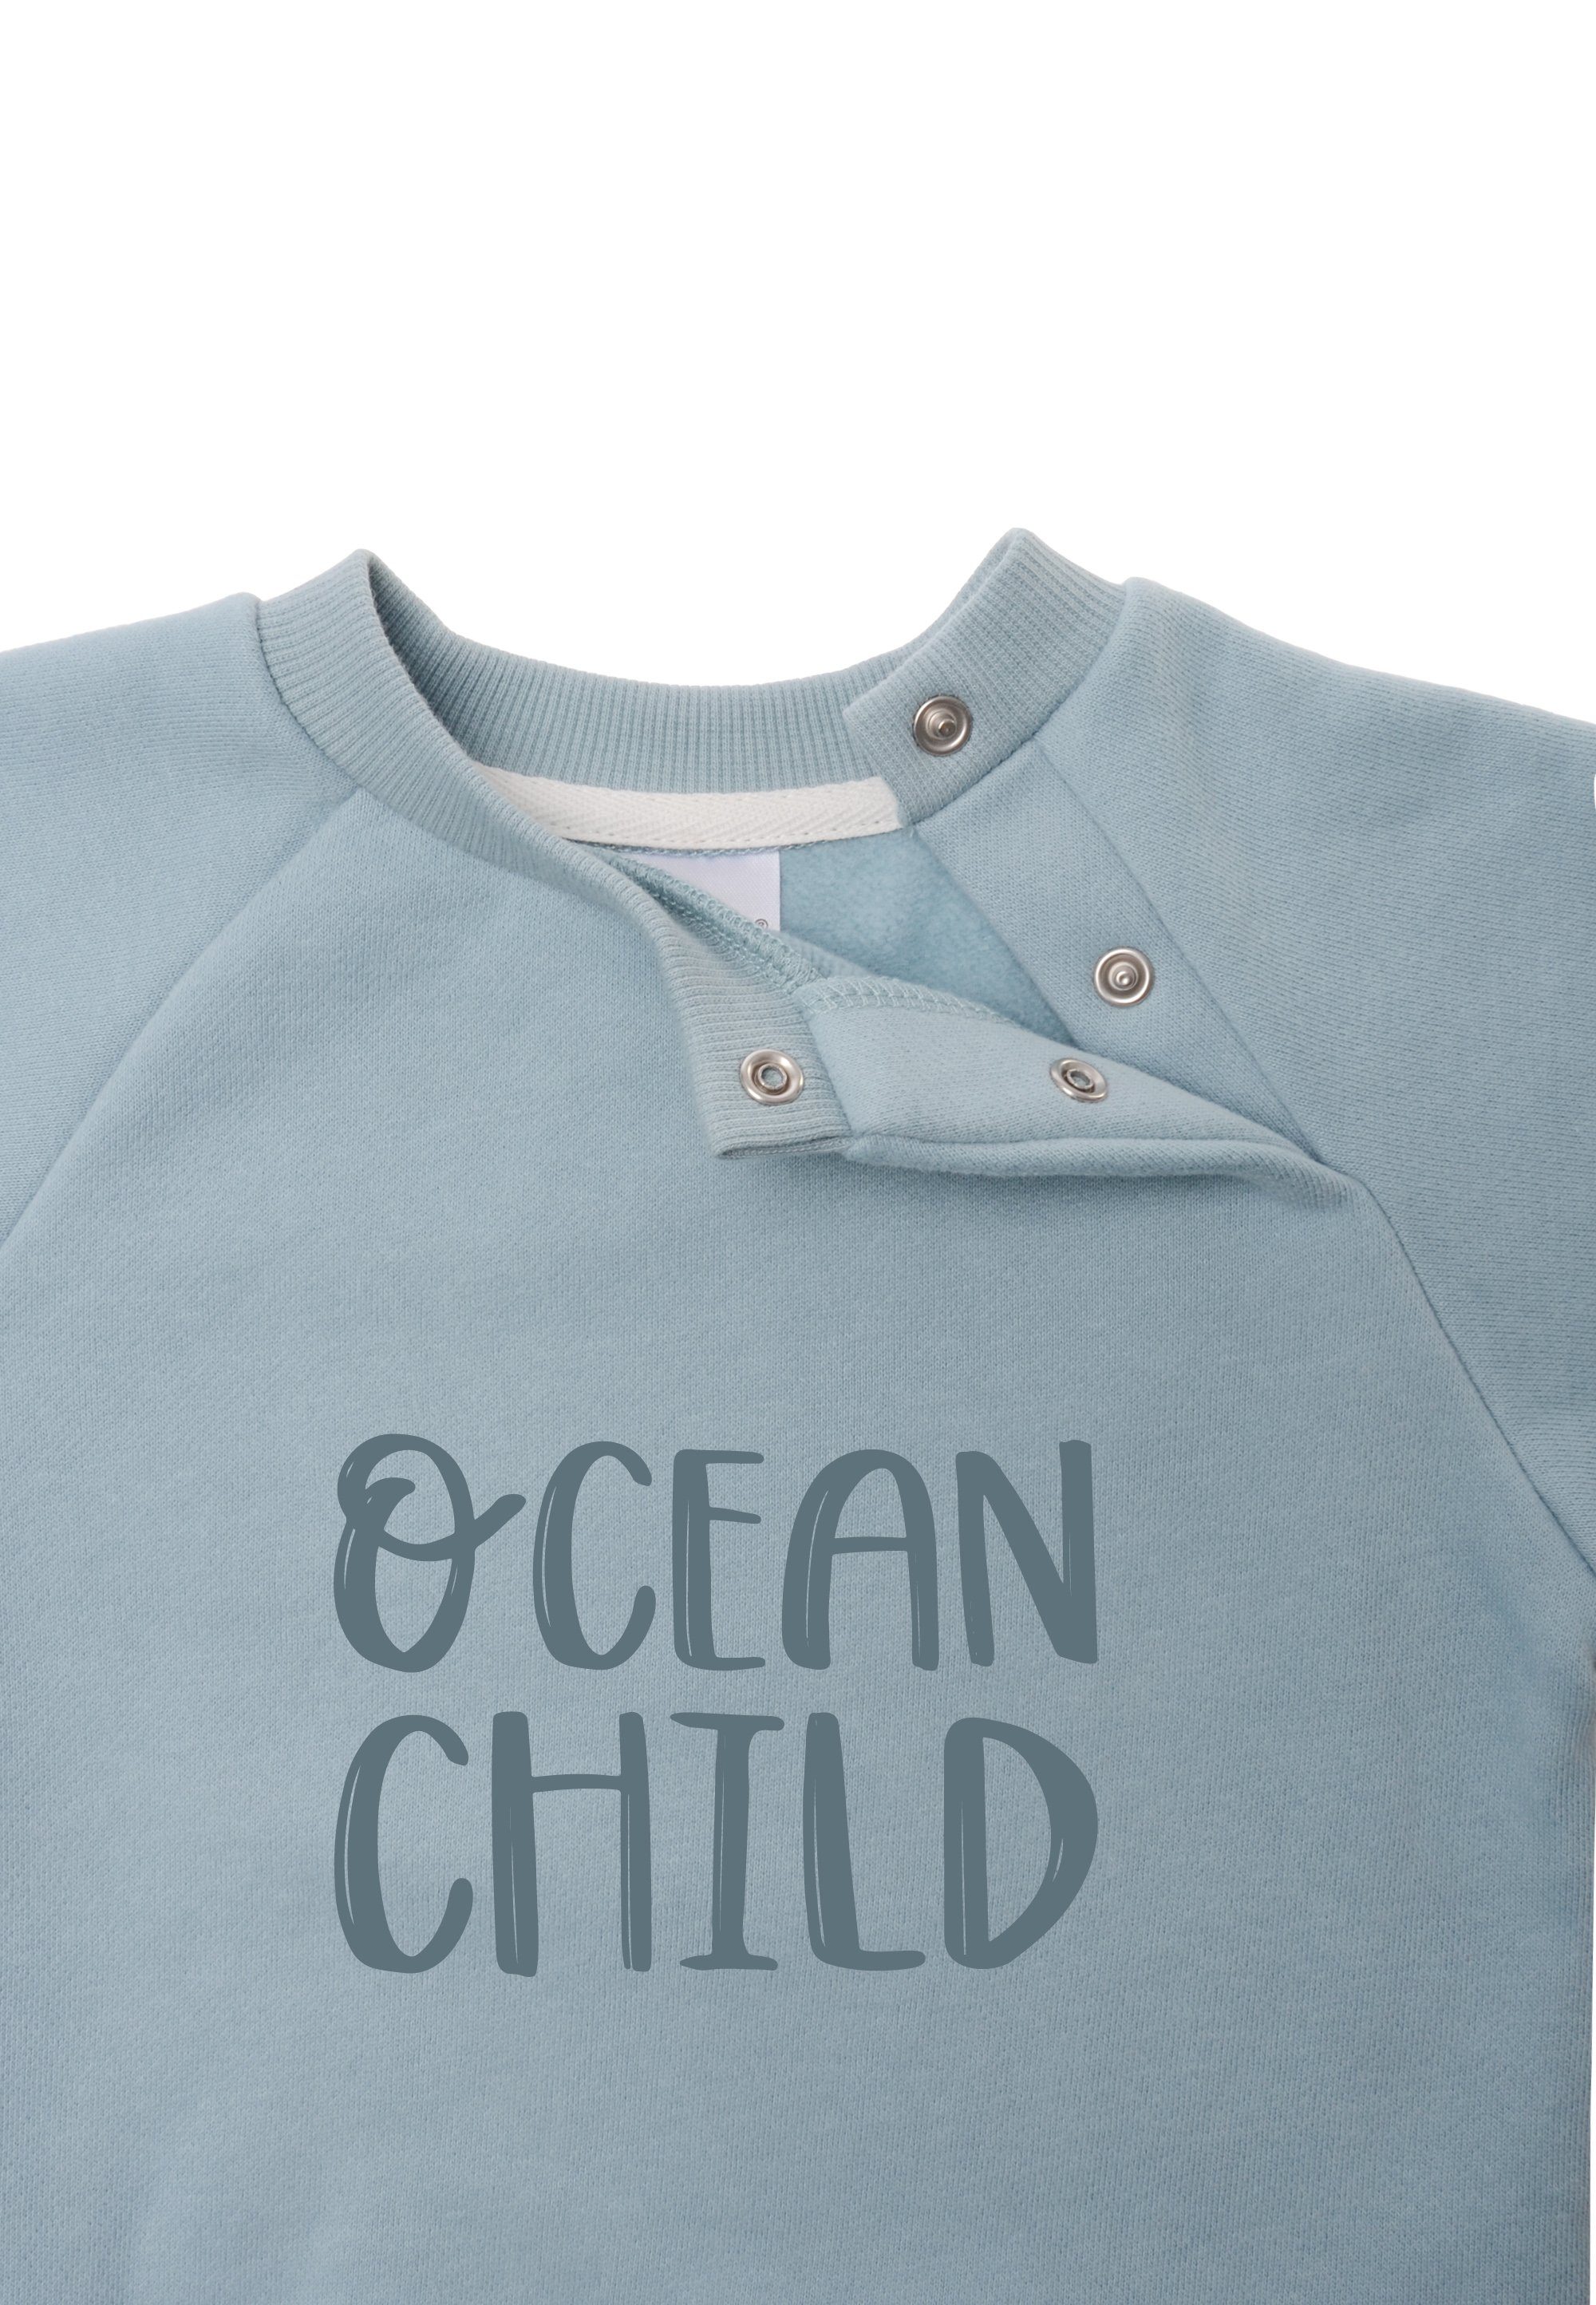 Liliput Sweatshirt weichem Baumwoll-Material aus Ocean child